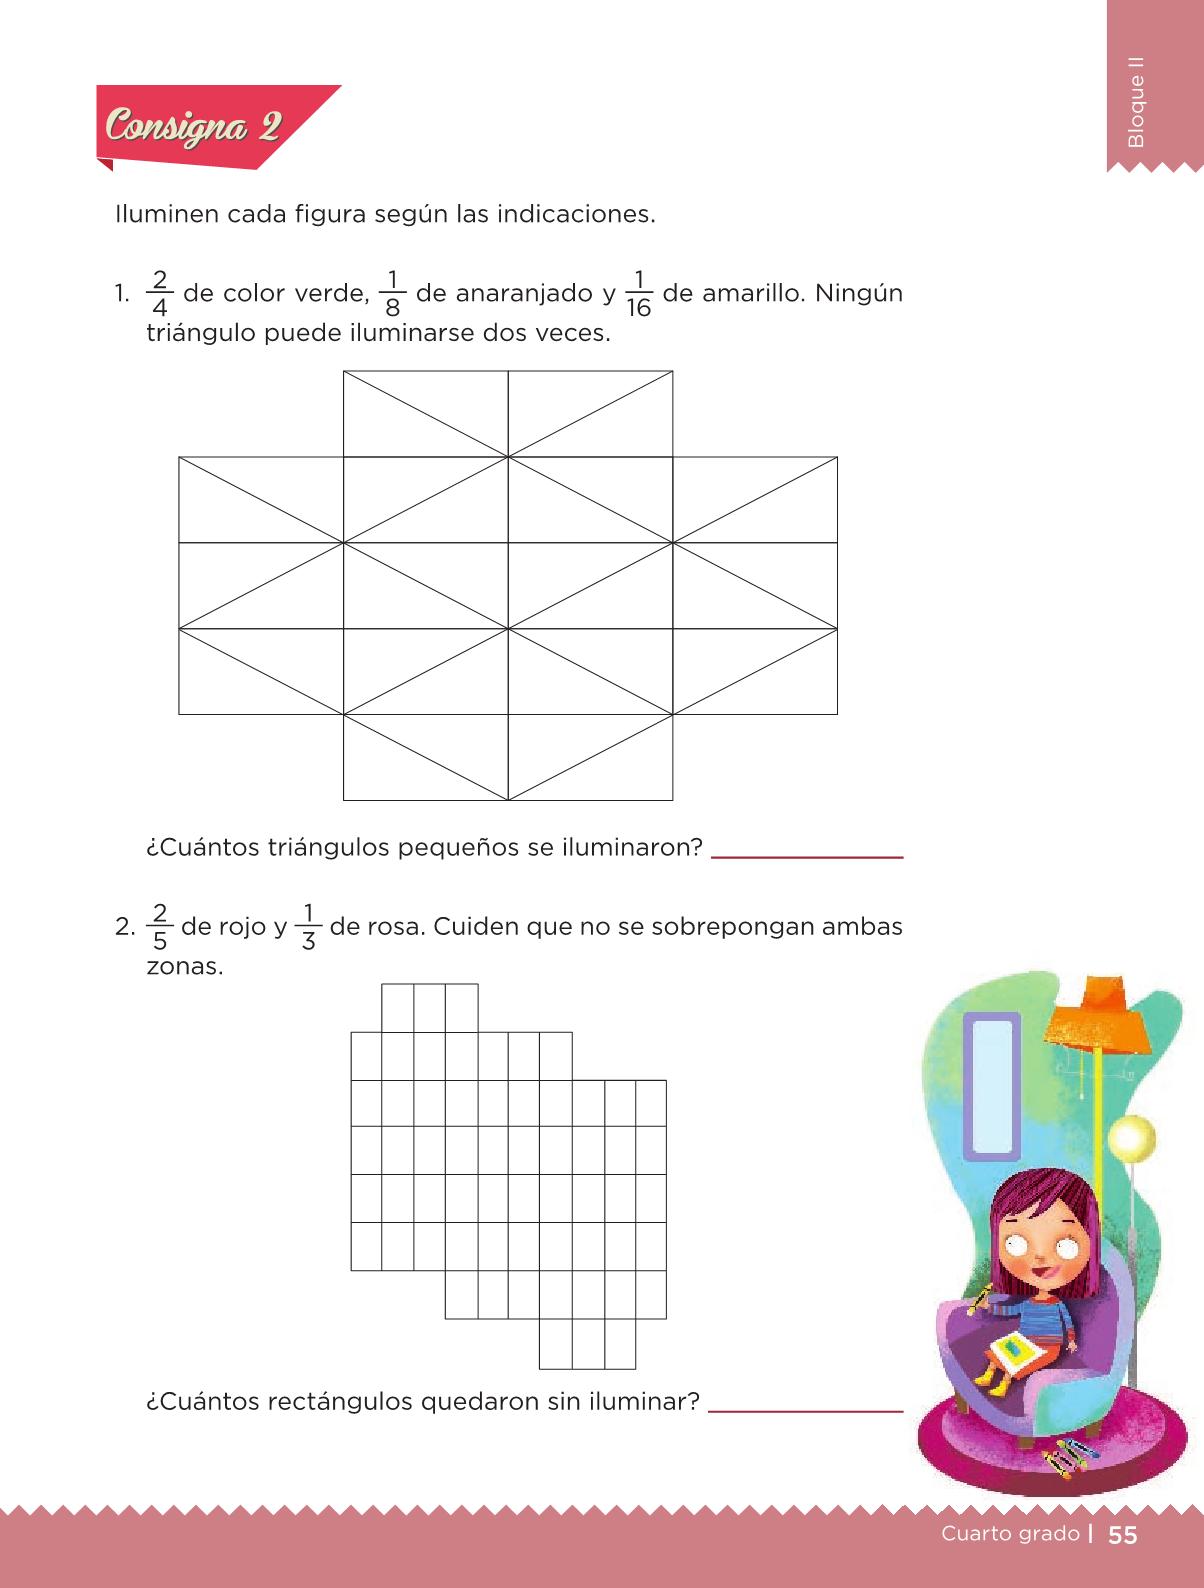 Desafíos Matemáticos libro para el alumno Cuarto grado 2016-2017 - Online - Página 249 de 256 ...